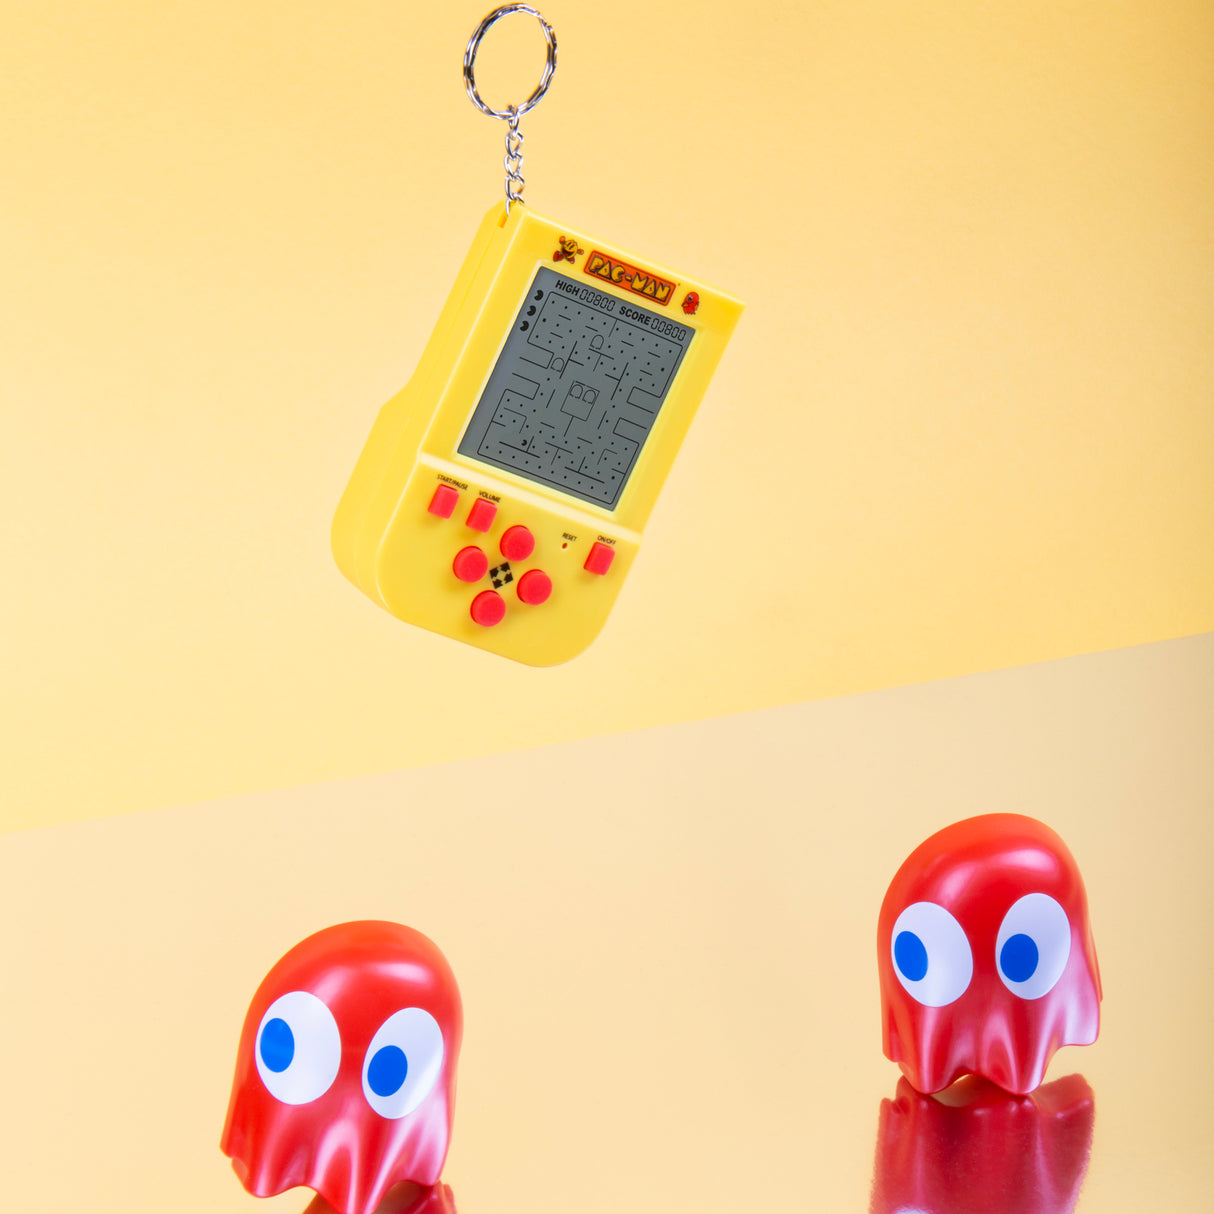 Pac-Man Retro Arcade Spiel Schlüsselanhänger mit Sound